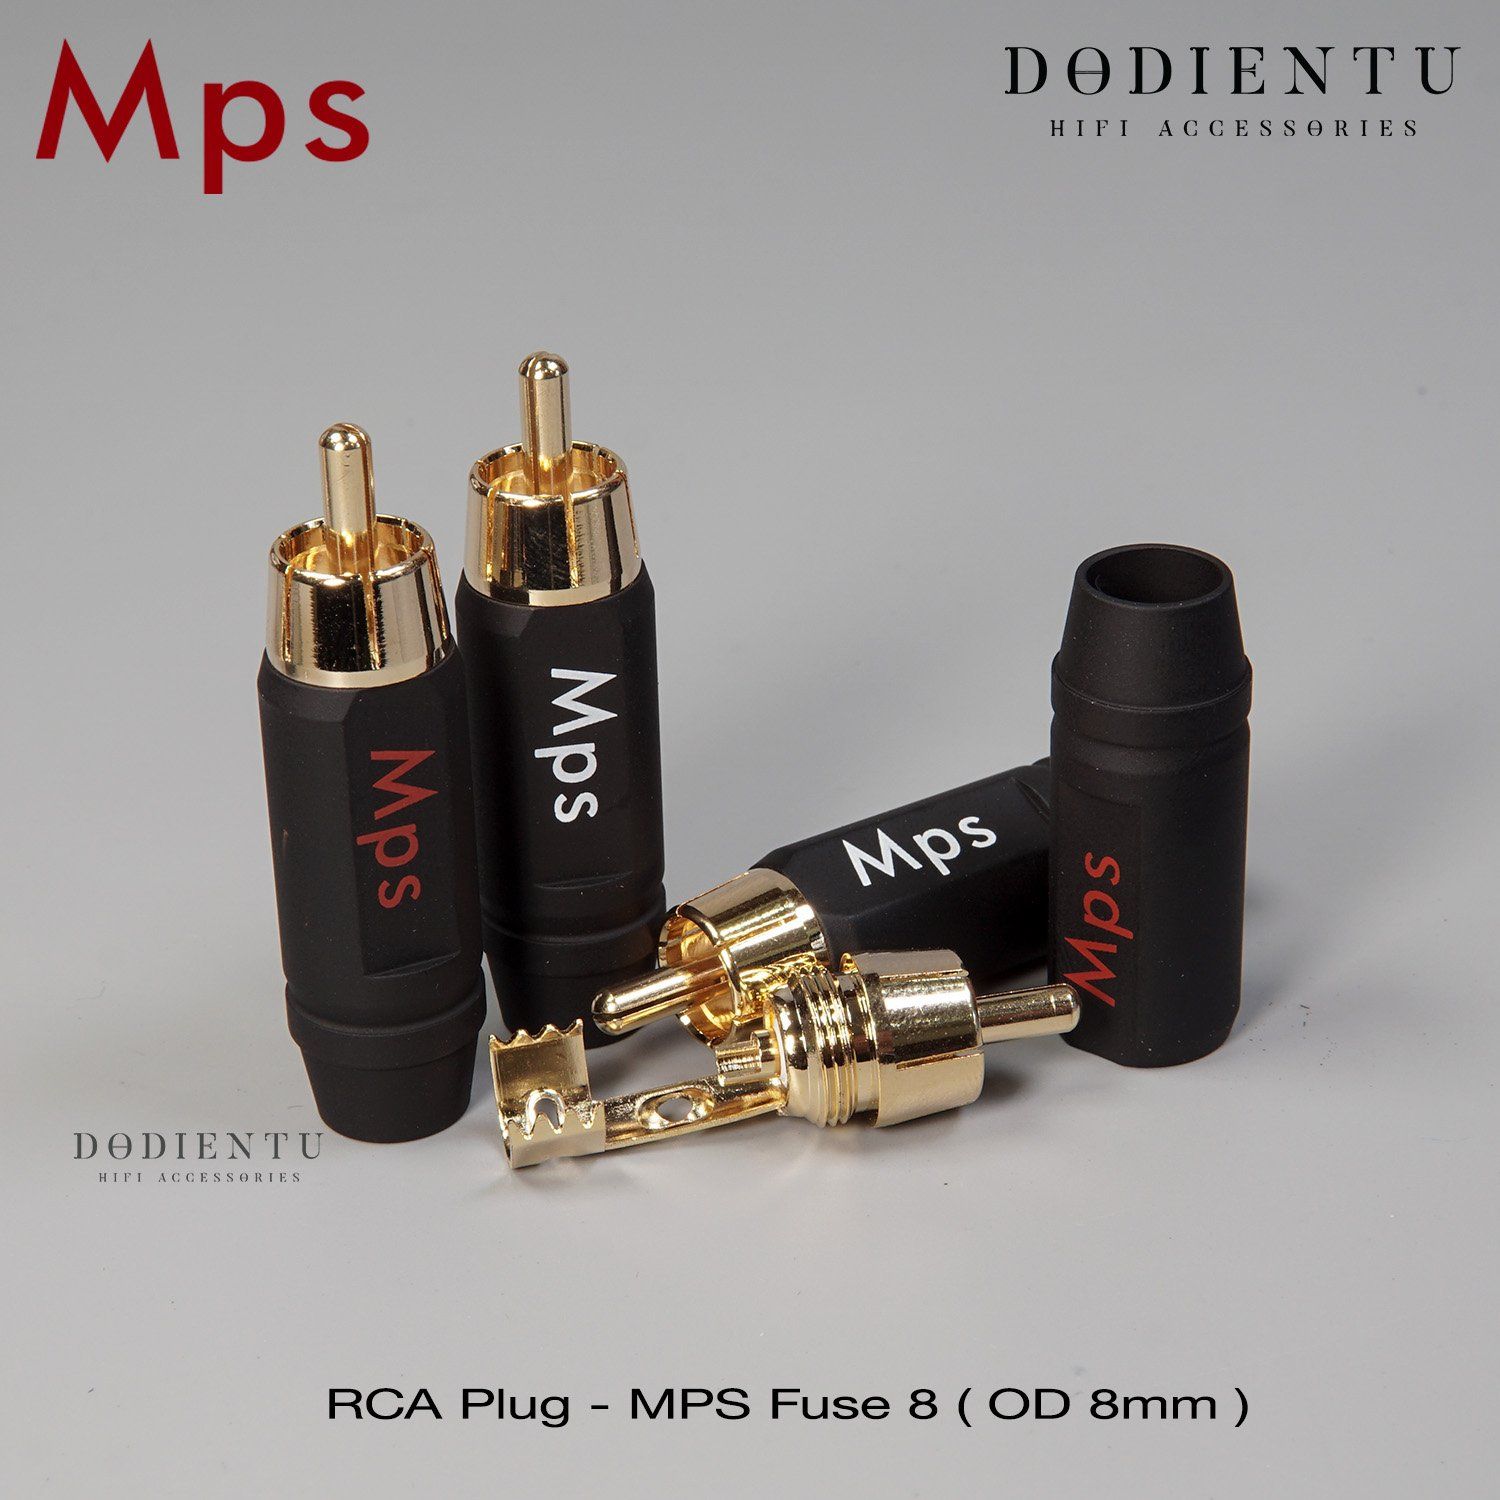 MPS Fuse 8 - RCA Plug